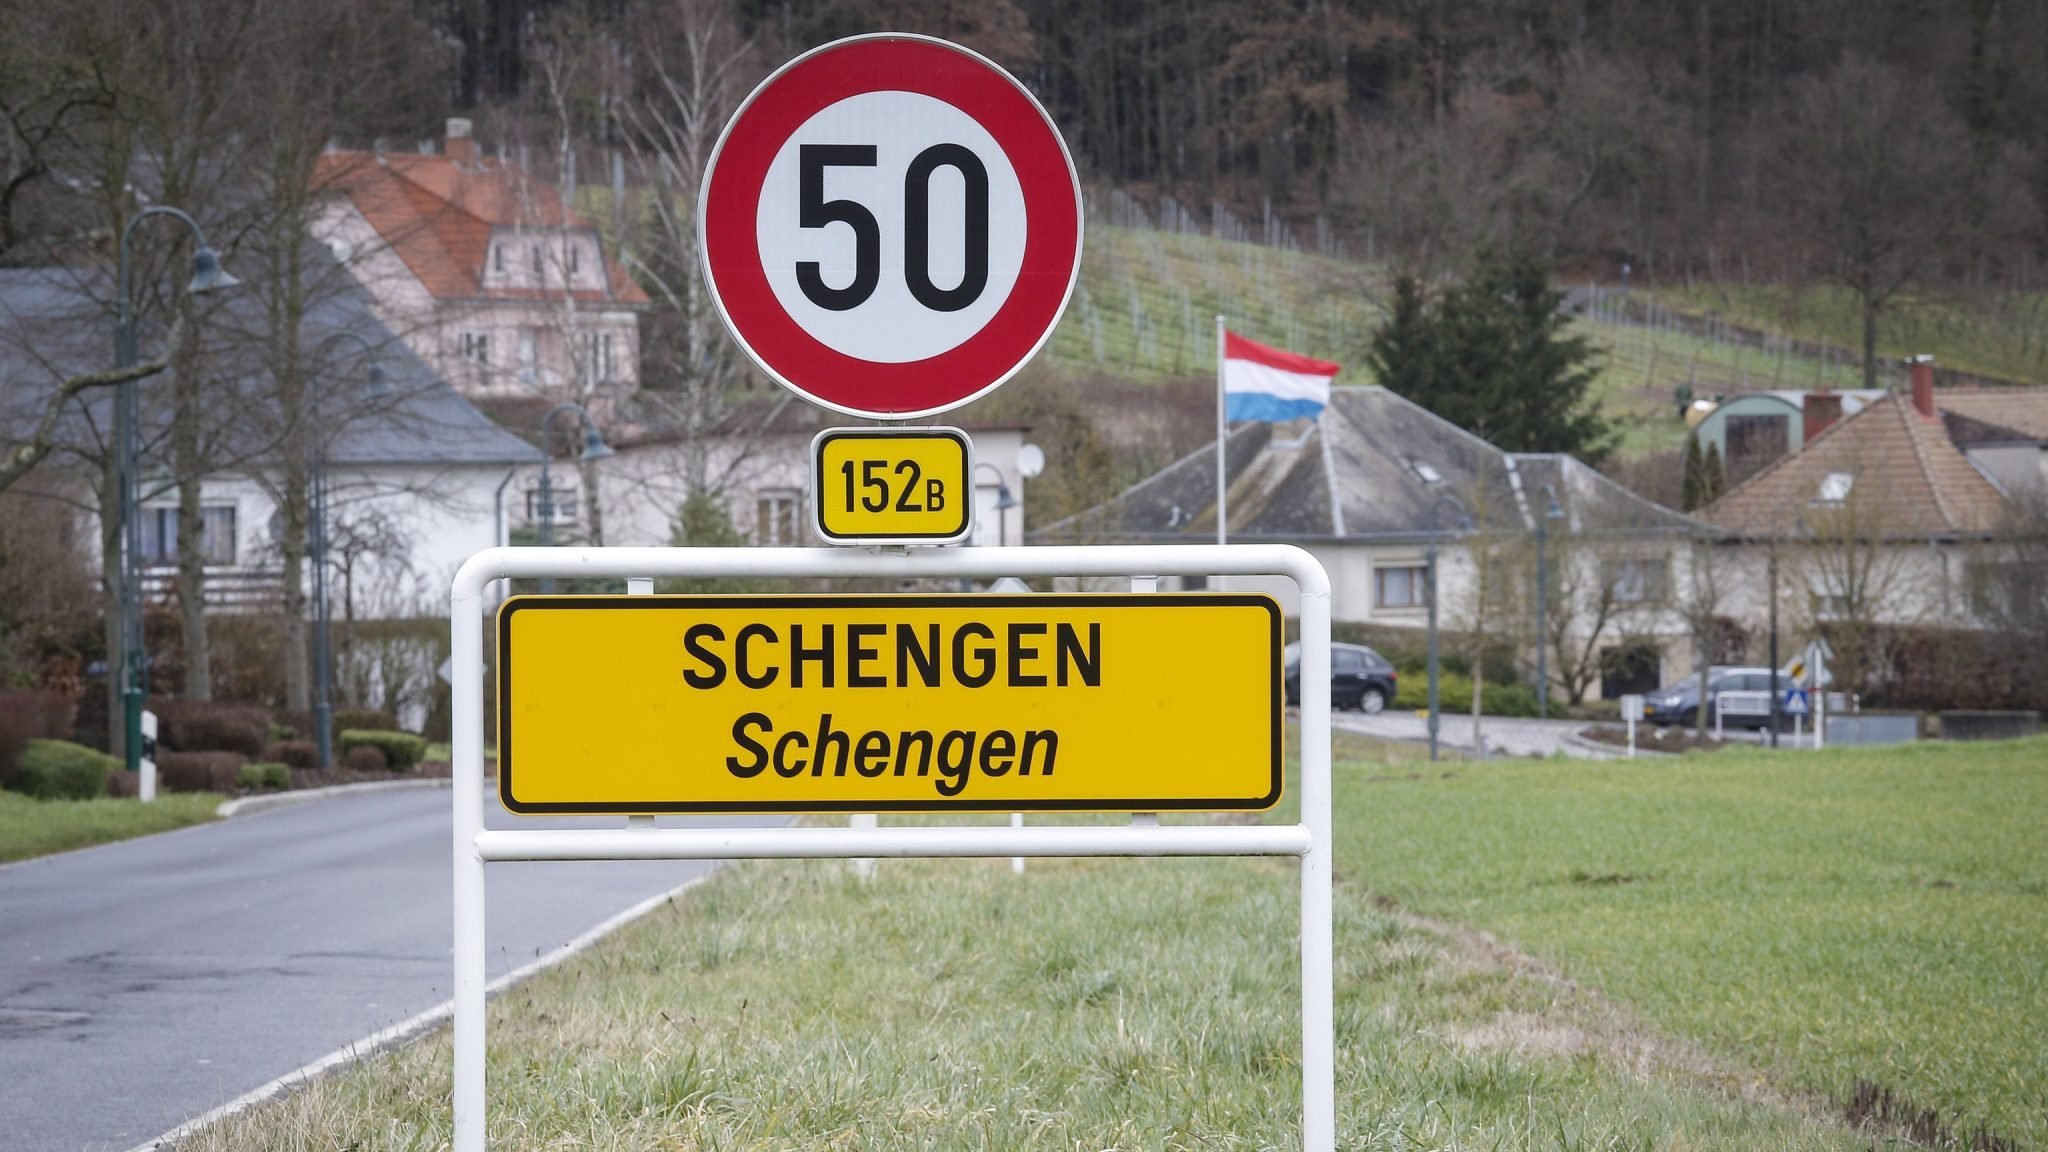  Croatia ar putea fi primită în zona Schengen de la 1 ianuarie 2023